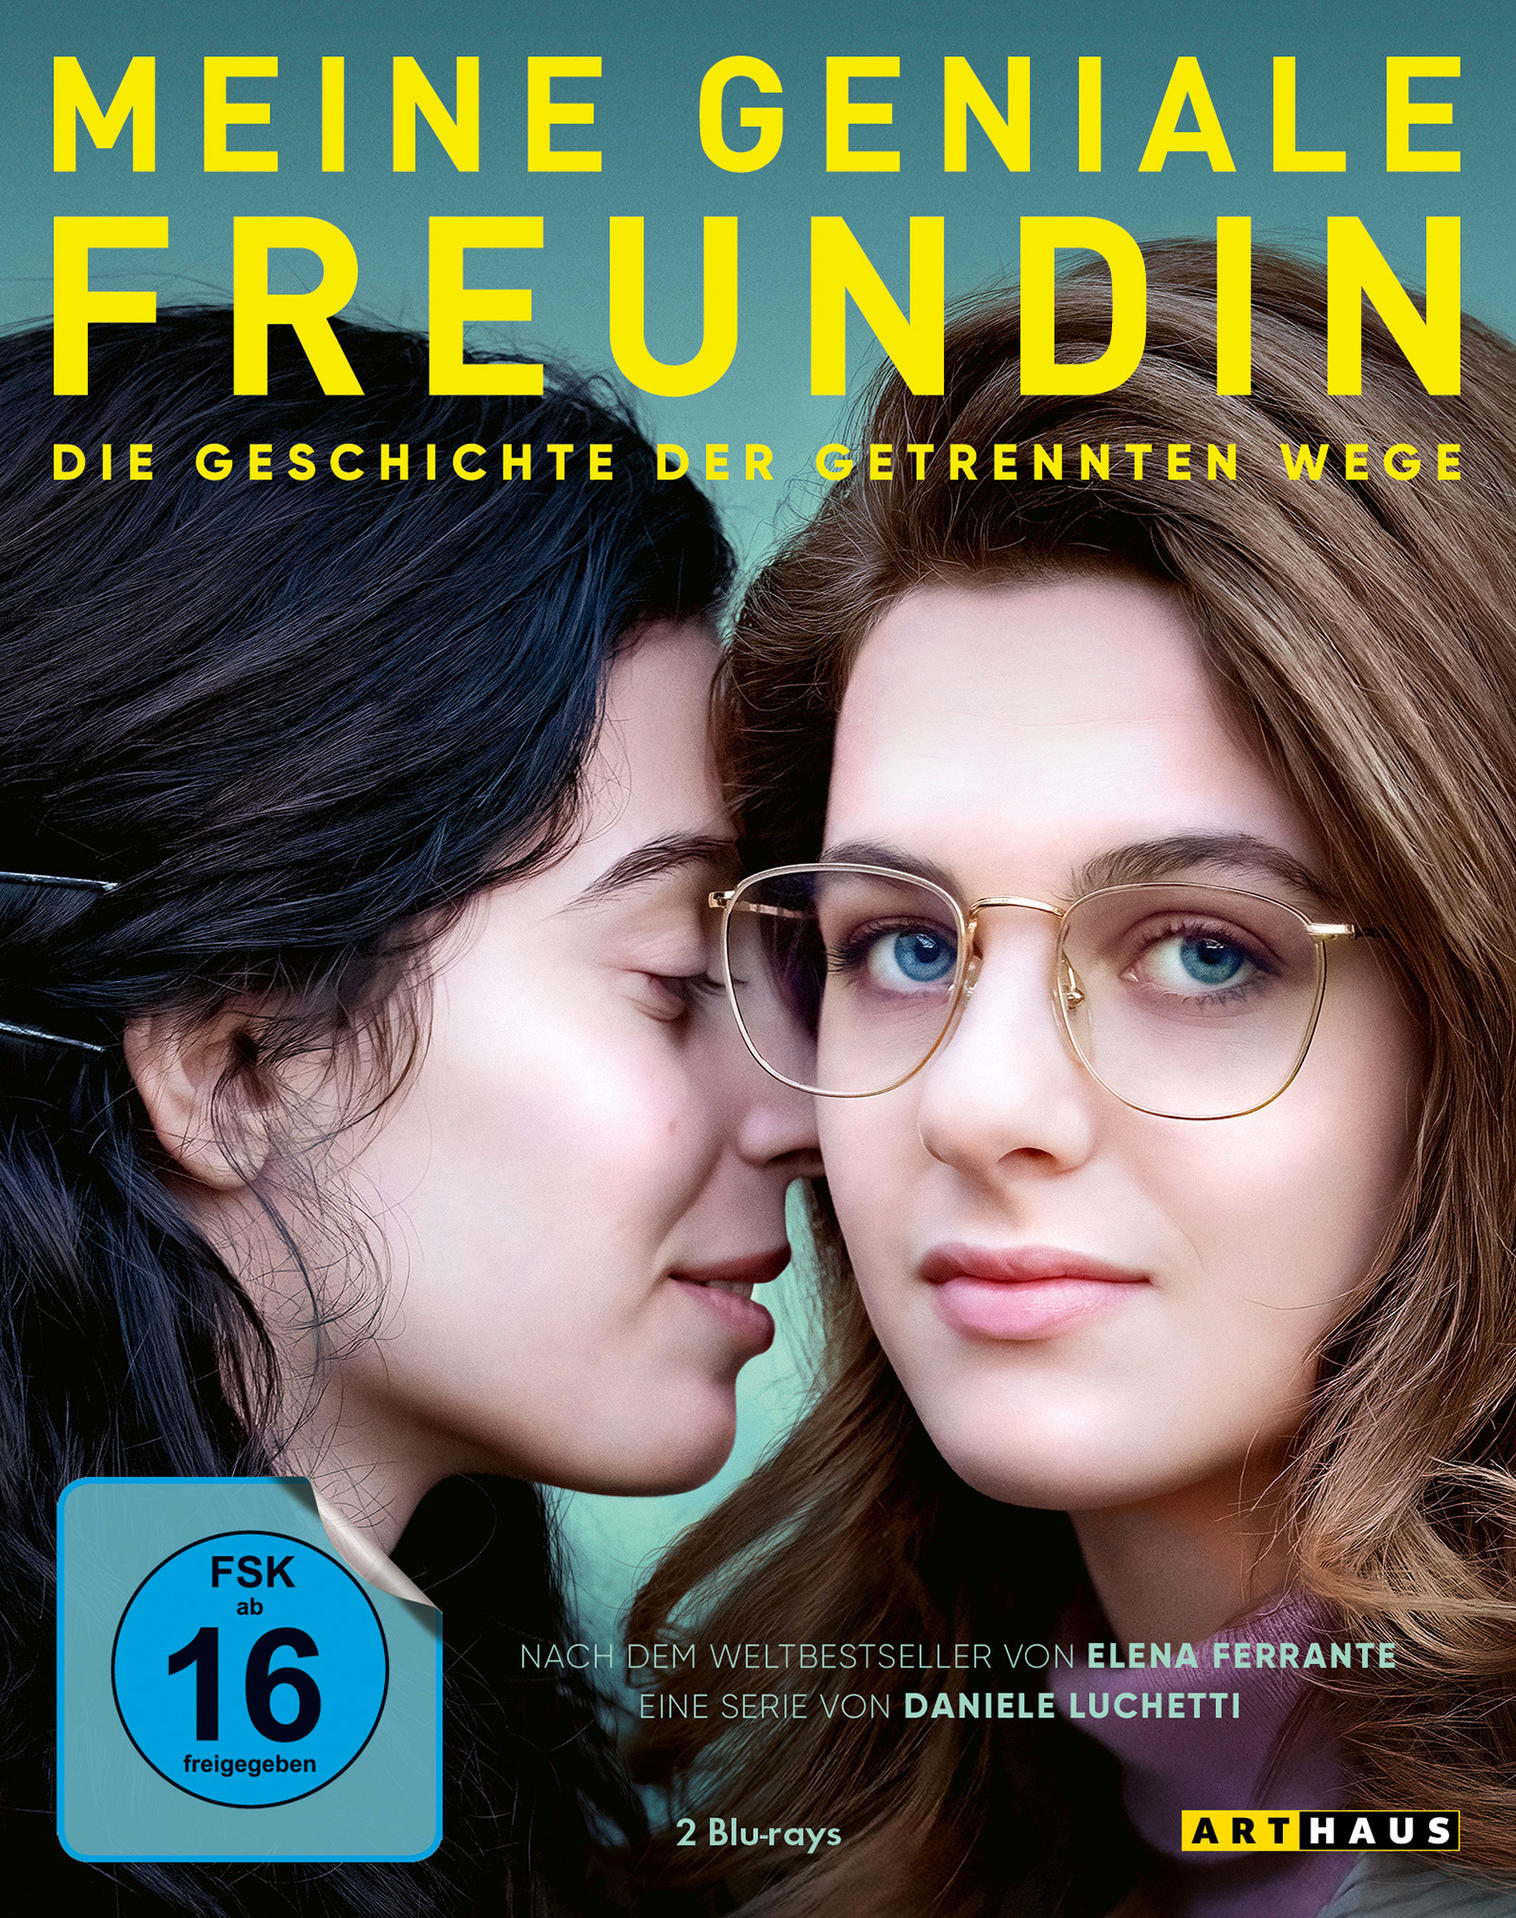 Meine Freundin - getrennten der 3 Wege Die - Staffel geniale Geschichte Blu-ray